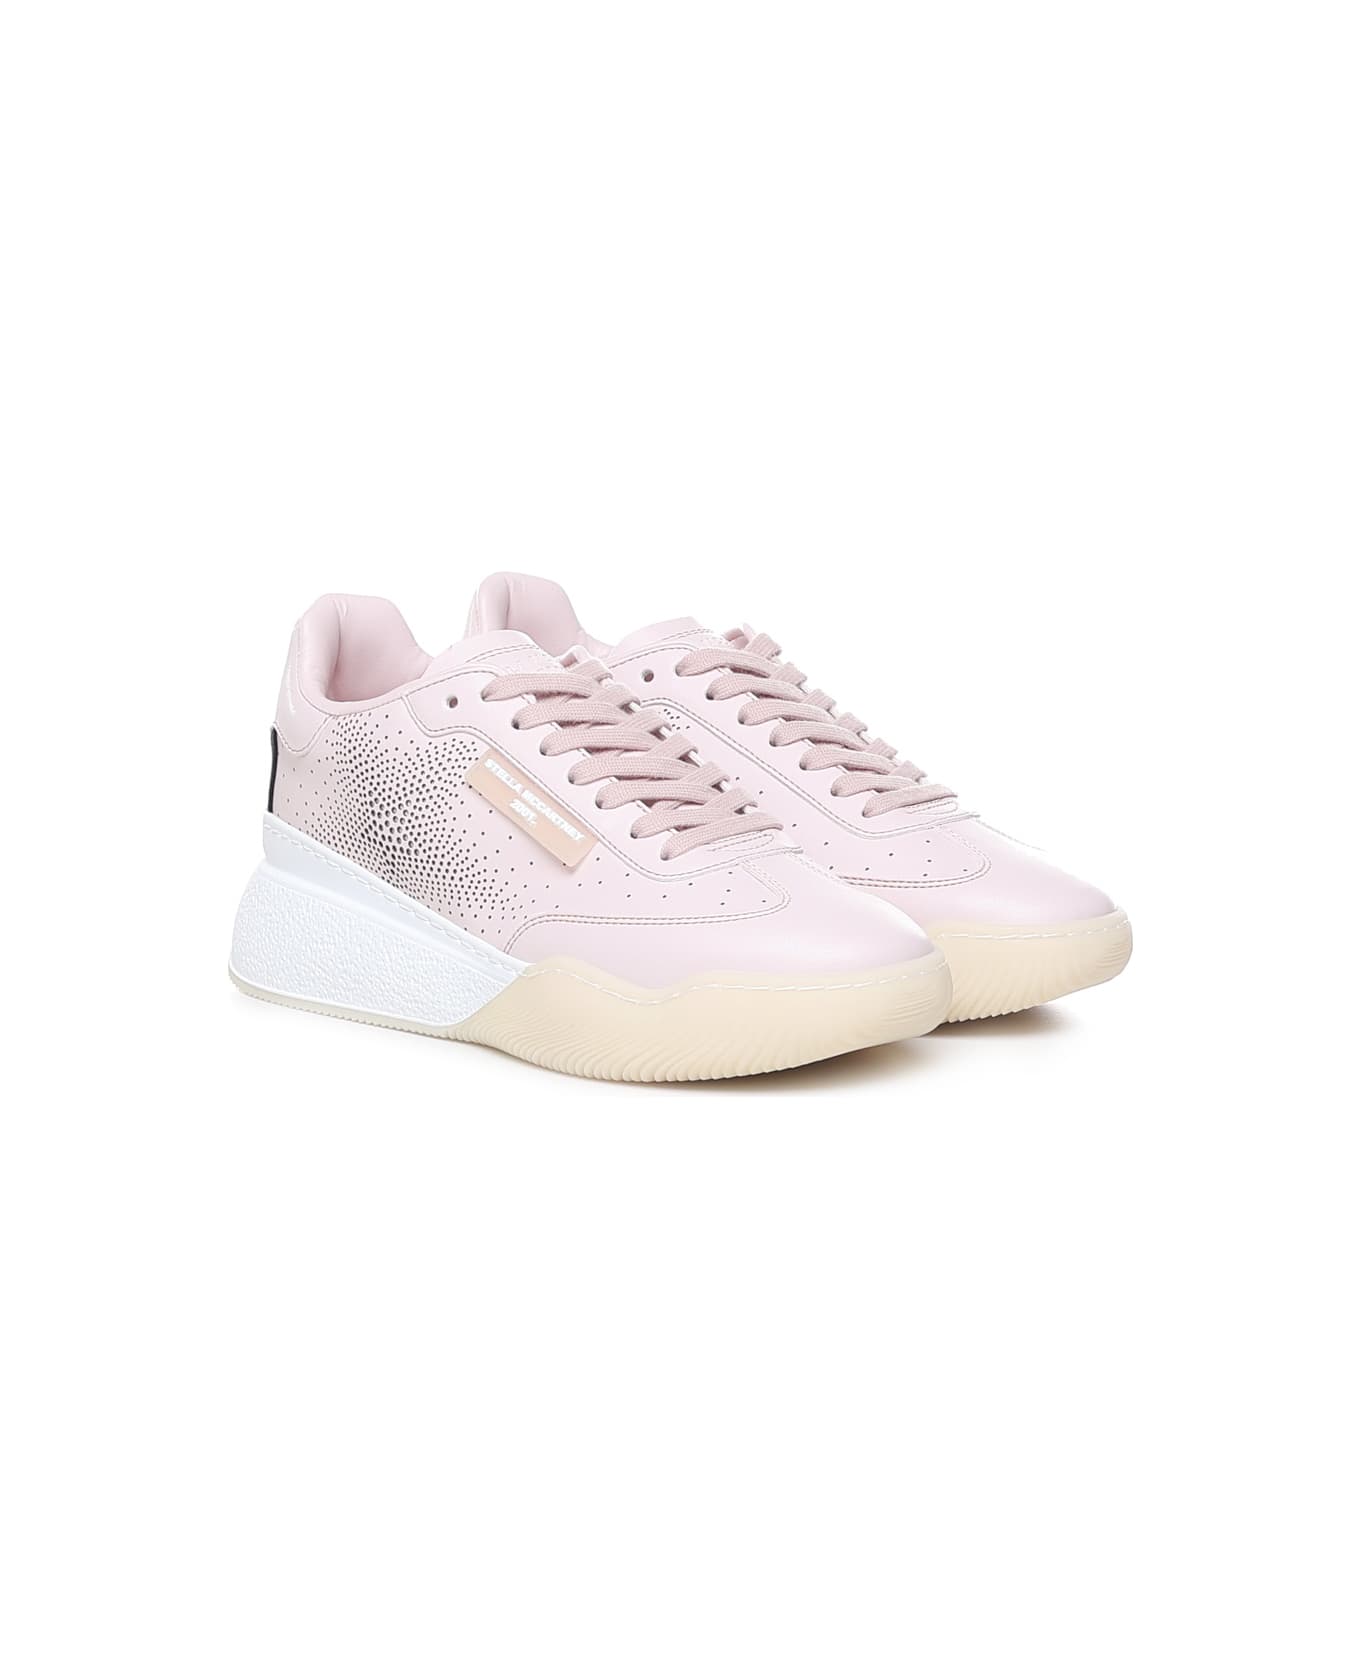 Stella McCartney Sneakers In Tencel - Pale pink